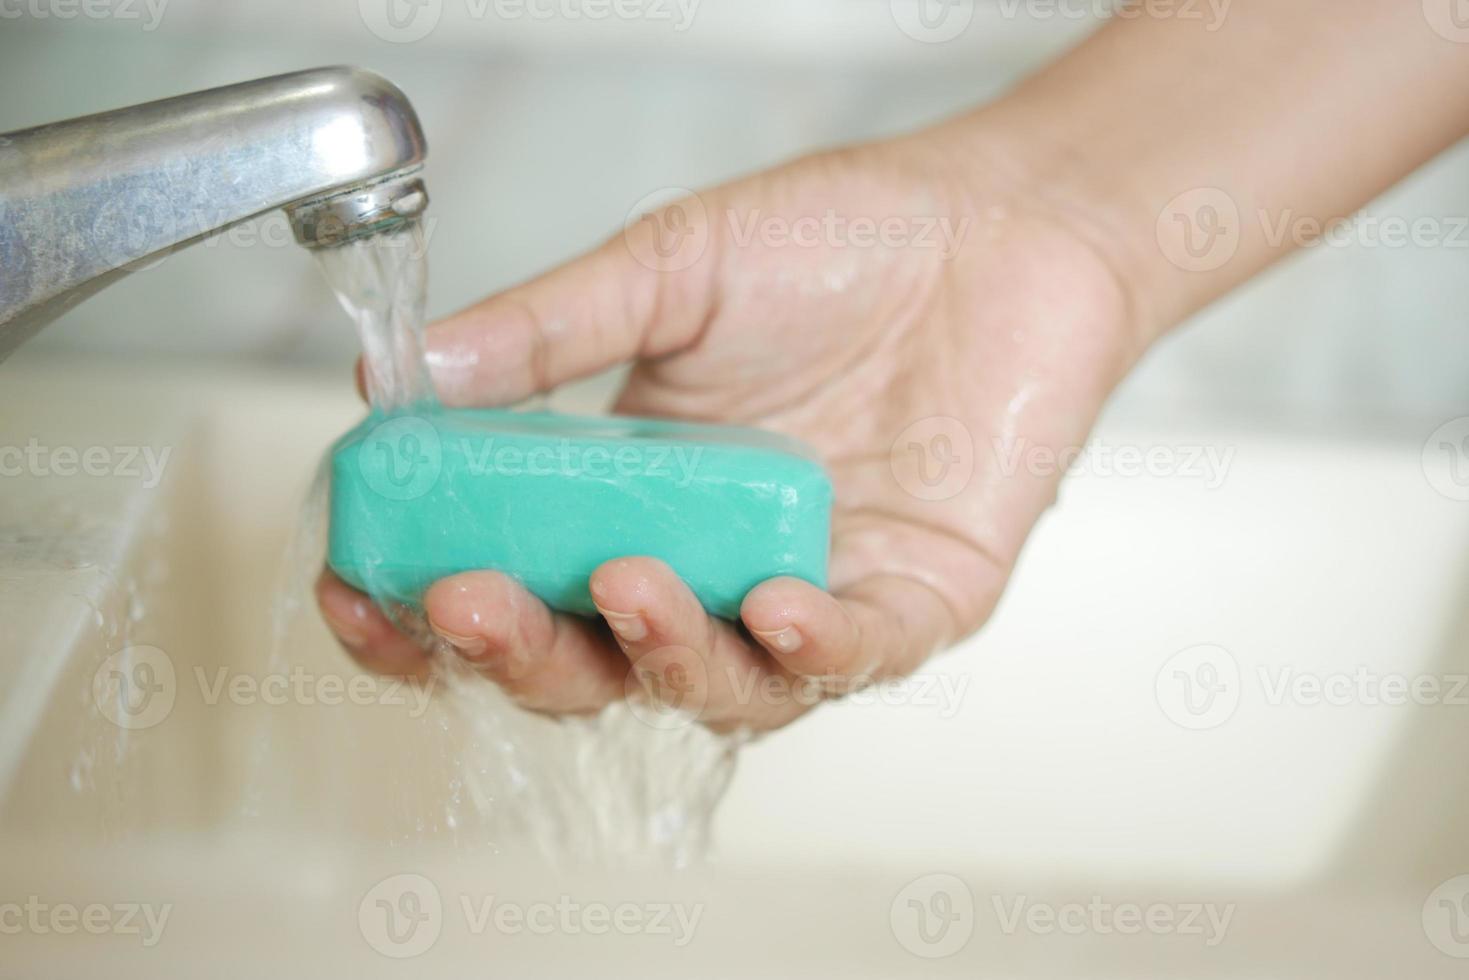 mulheres lavando as mãos com sabão água morna foto